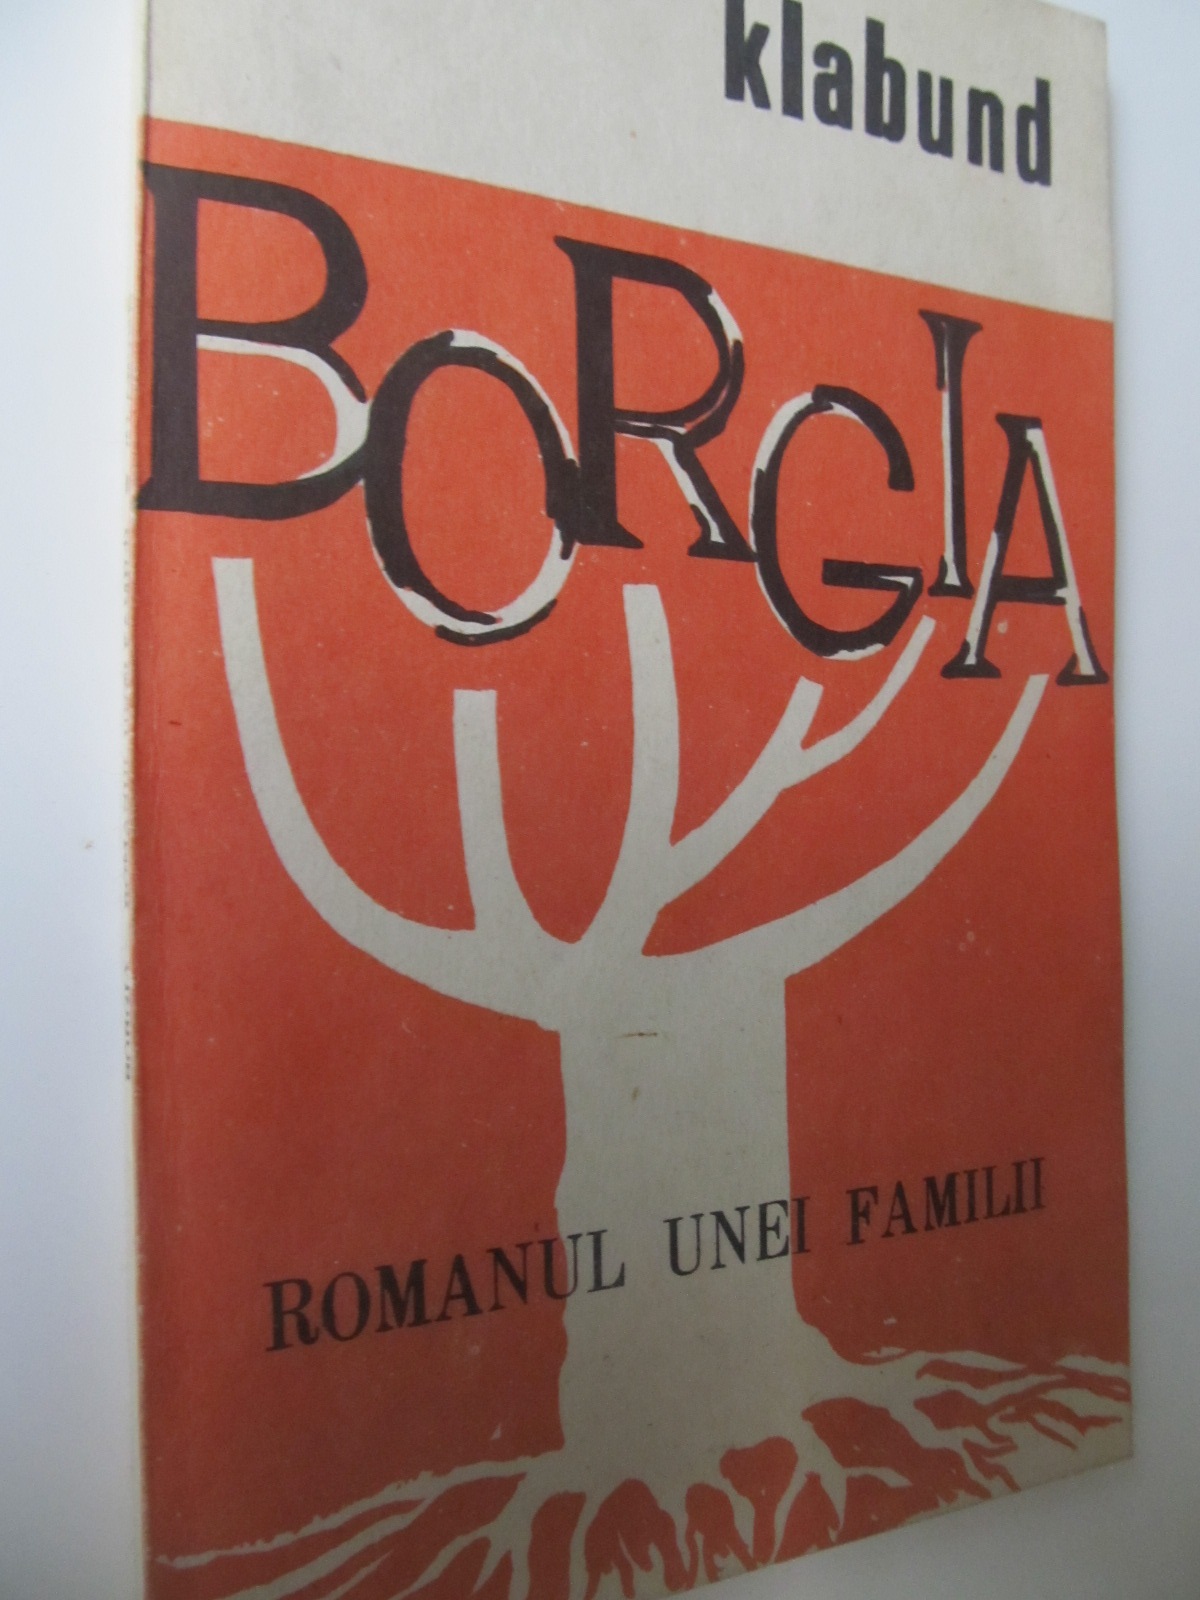 Borgia romanul unei familii - Klabund | Detalii carte